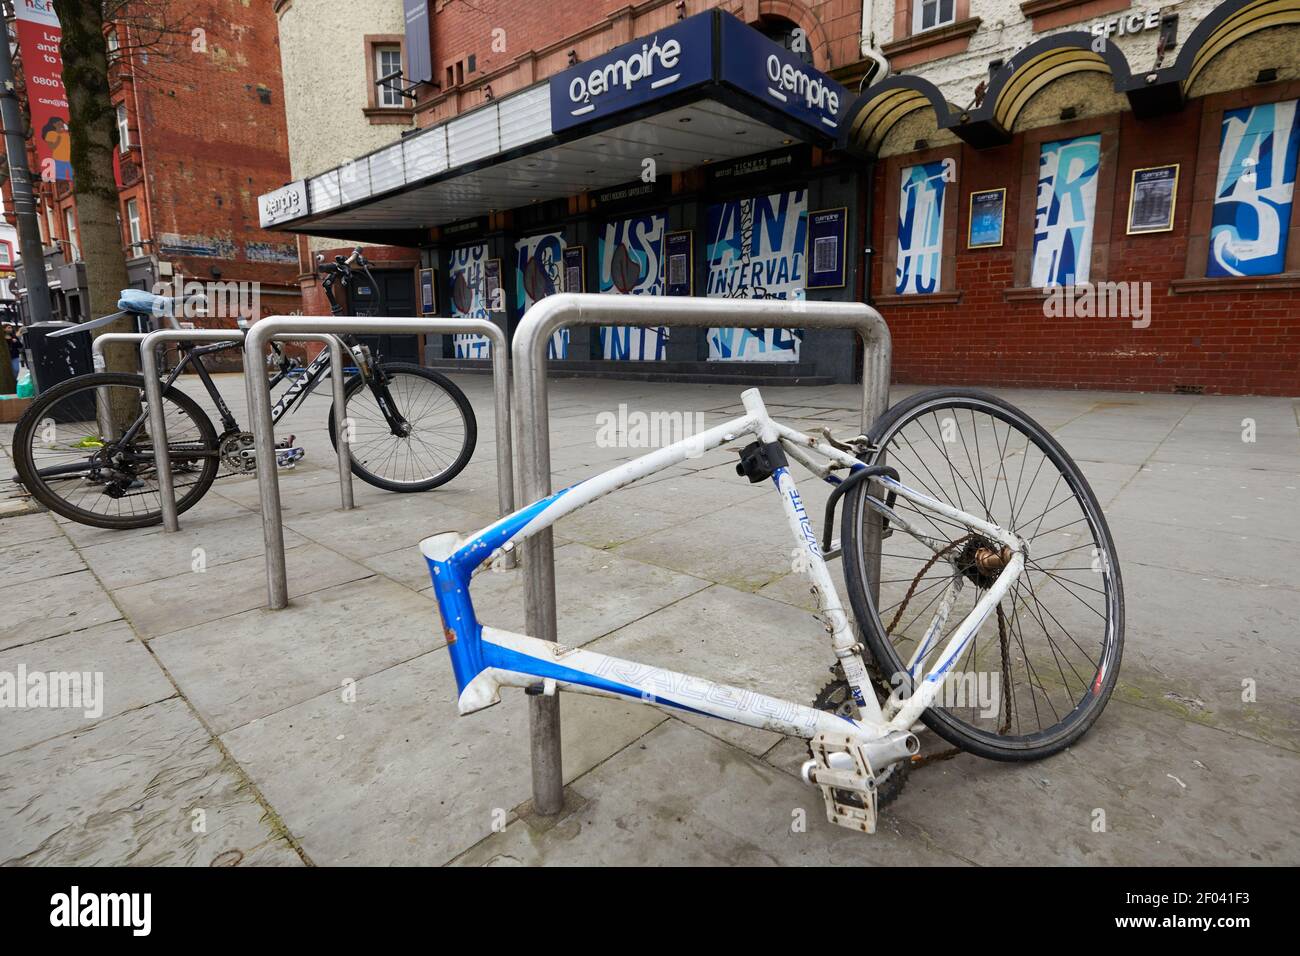 London, Großbritannien - 20. Februar 2021: Der verlassene Rahmen eines Fahrrads, die meisten seiner Teile gestohlen, außerhalb der O2 Shepherds Bush während der Coronavrius Pandemie. Während der Pandemie ist ein erheblicher Anstieg der Zyklusdiebstähle zu sehen. Stockfoto